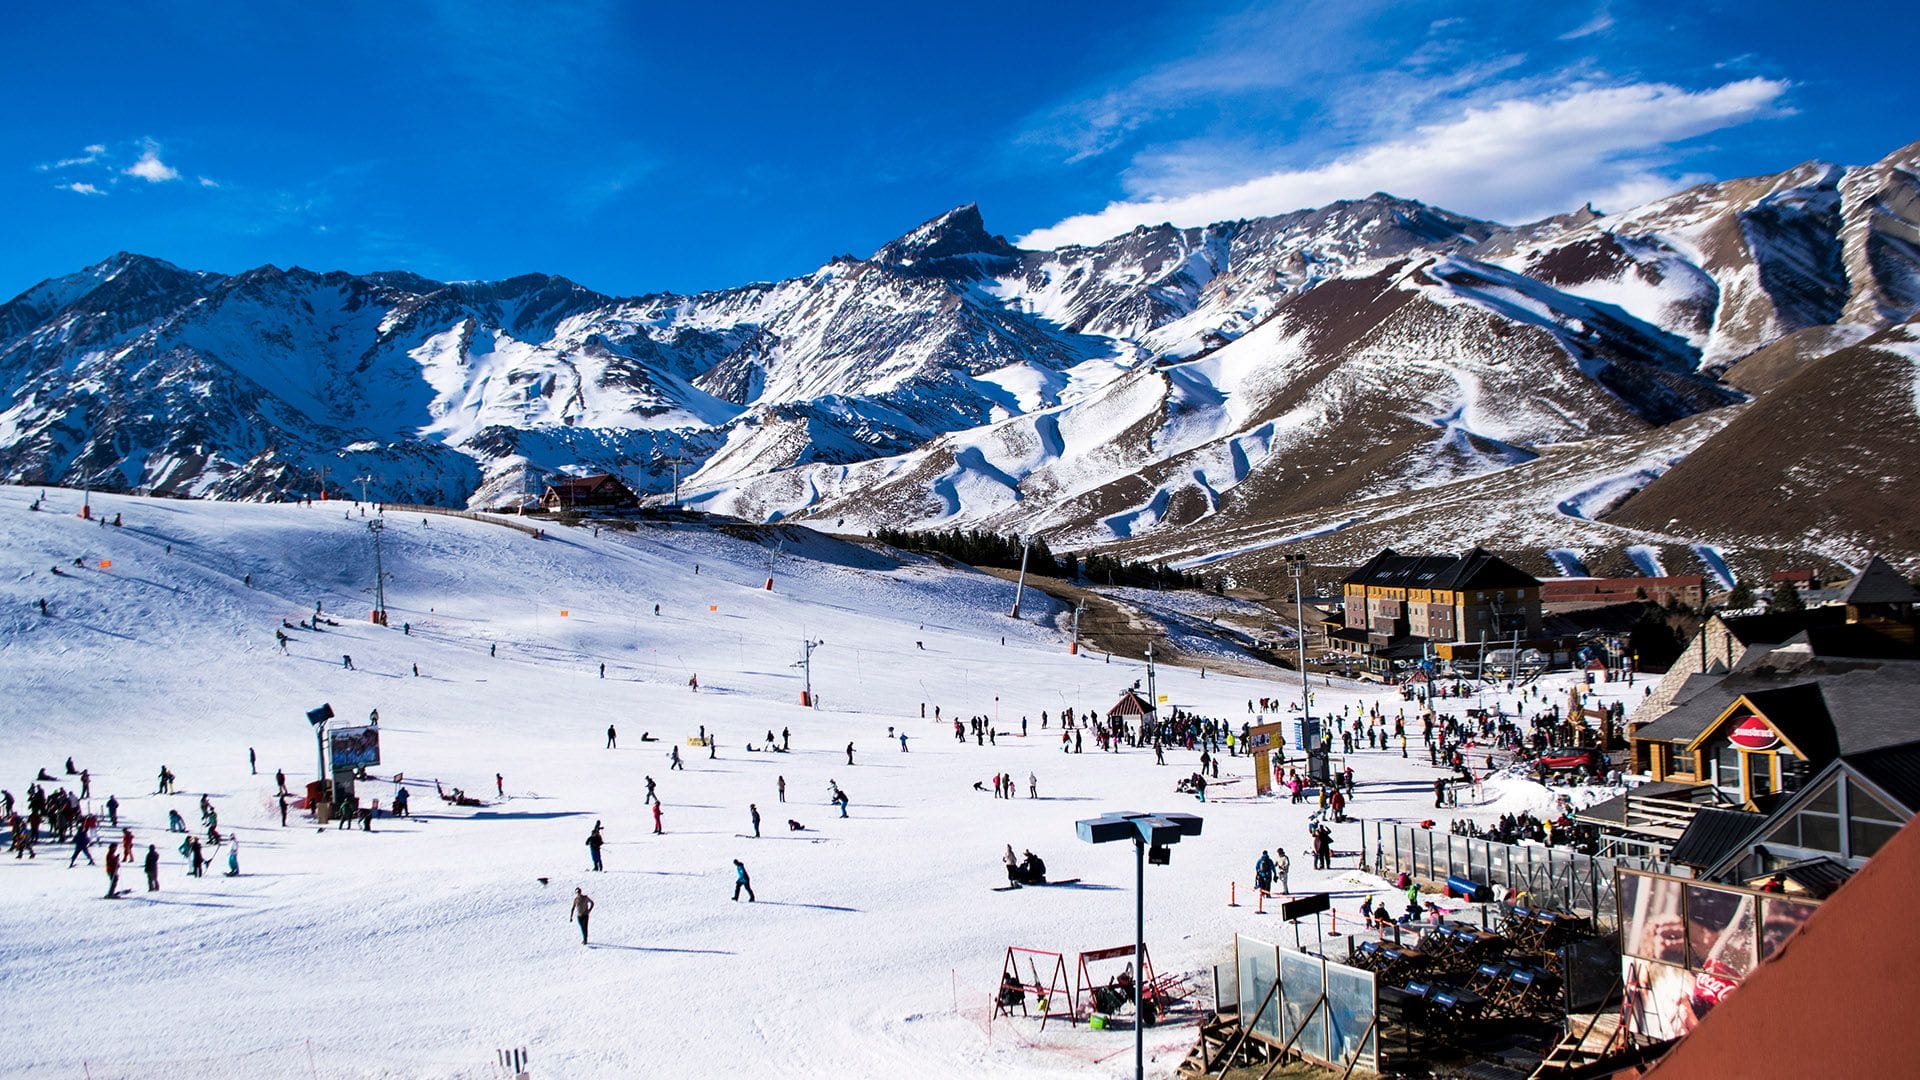 Vacaciones de invierno los turistas argentinos gastaron casi 30